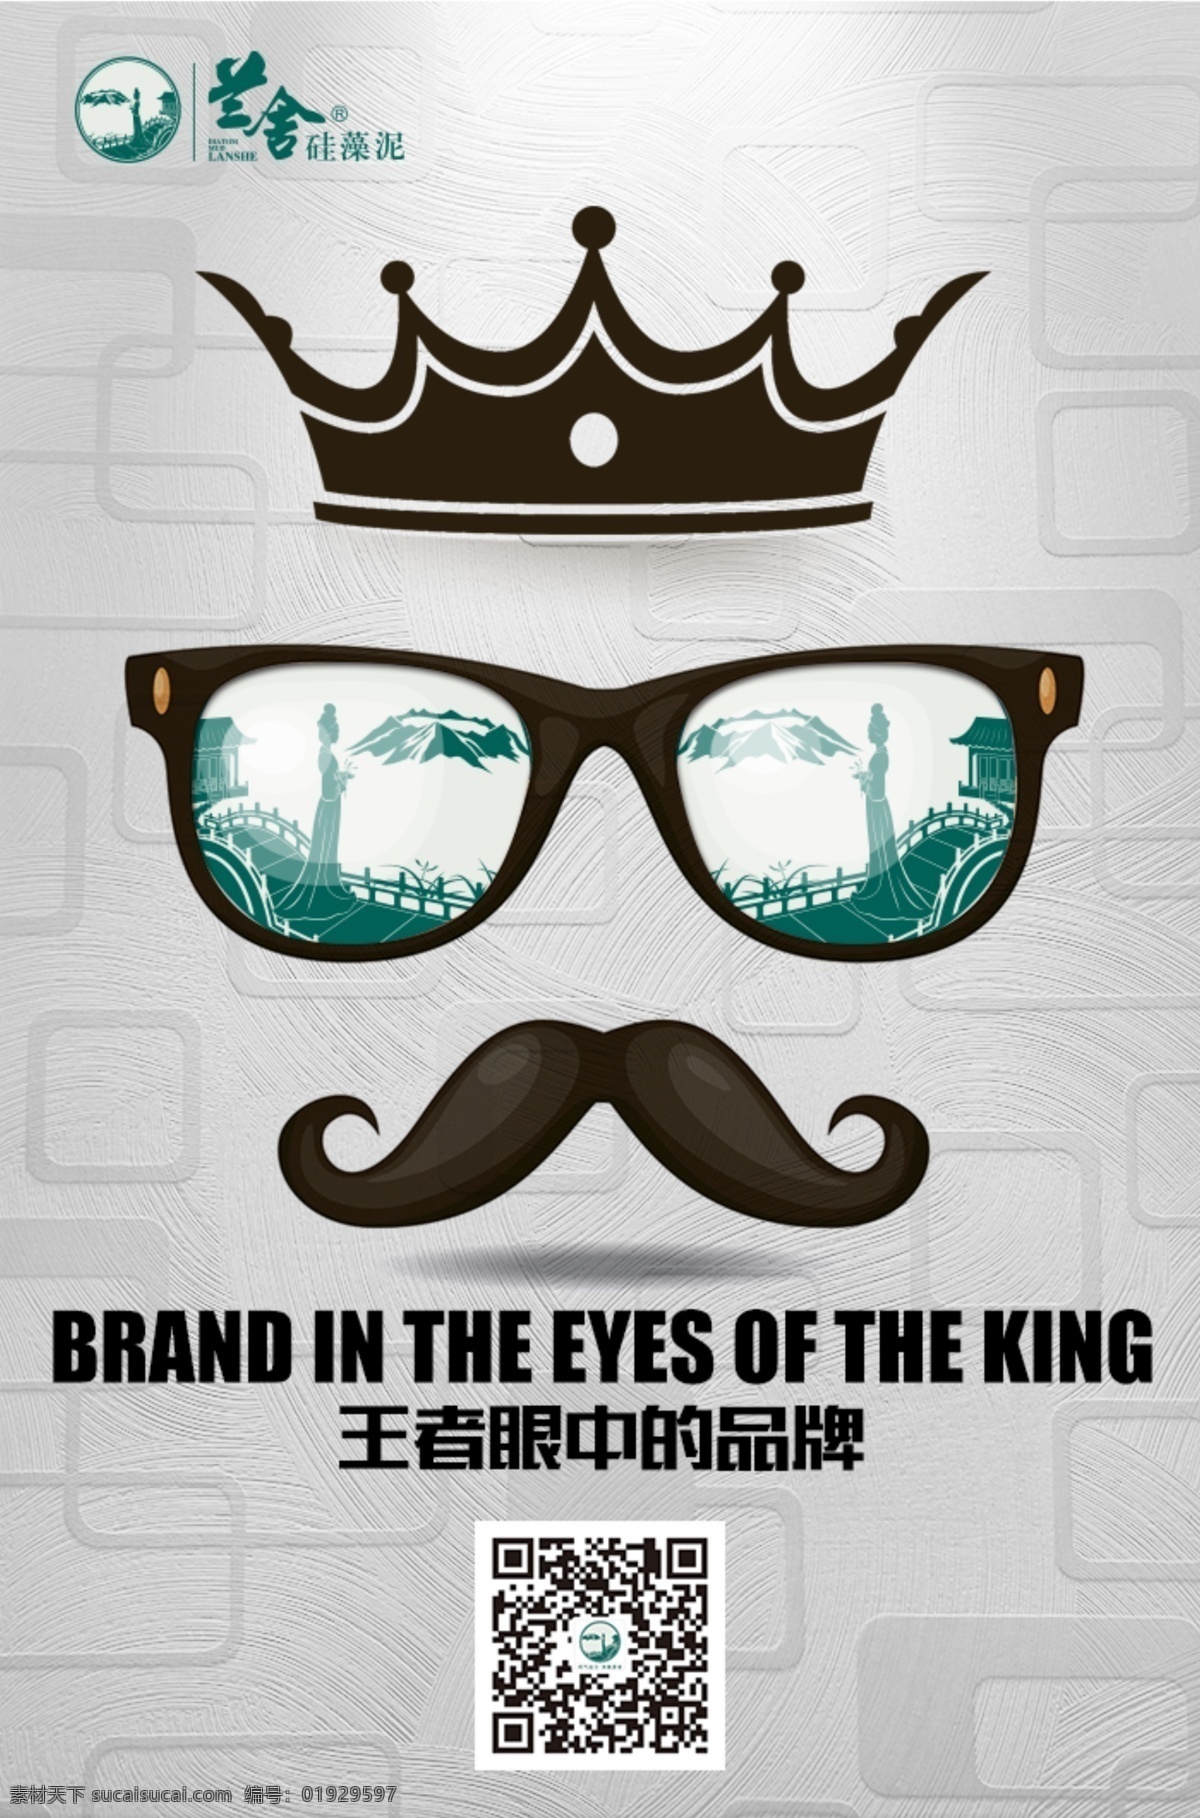 创意 海报 王者 眼中 品牌 胡子 皇冠 眼镜 个性 灰色